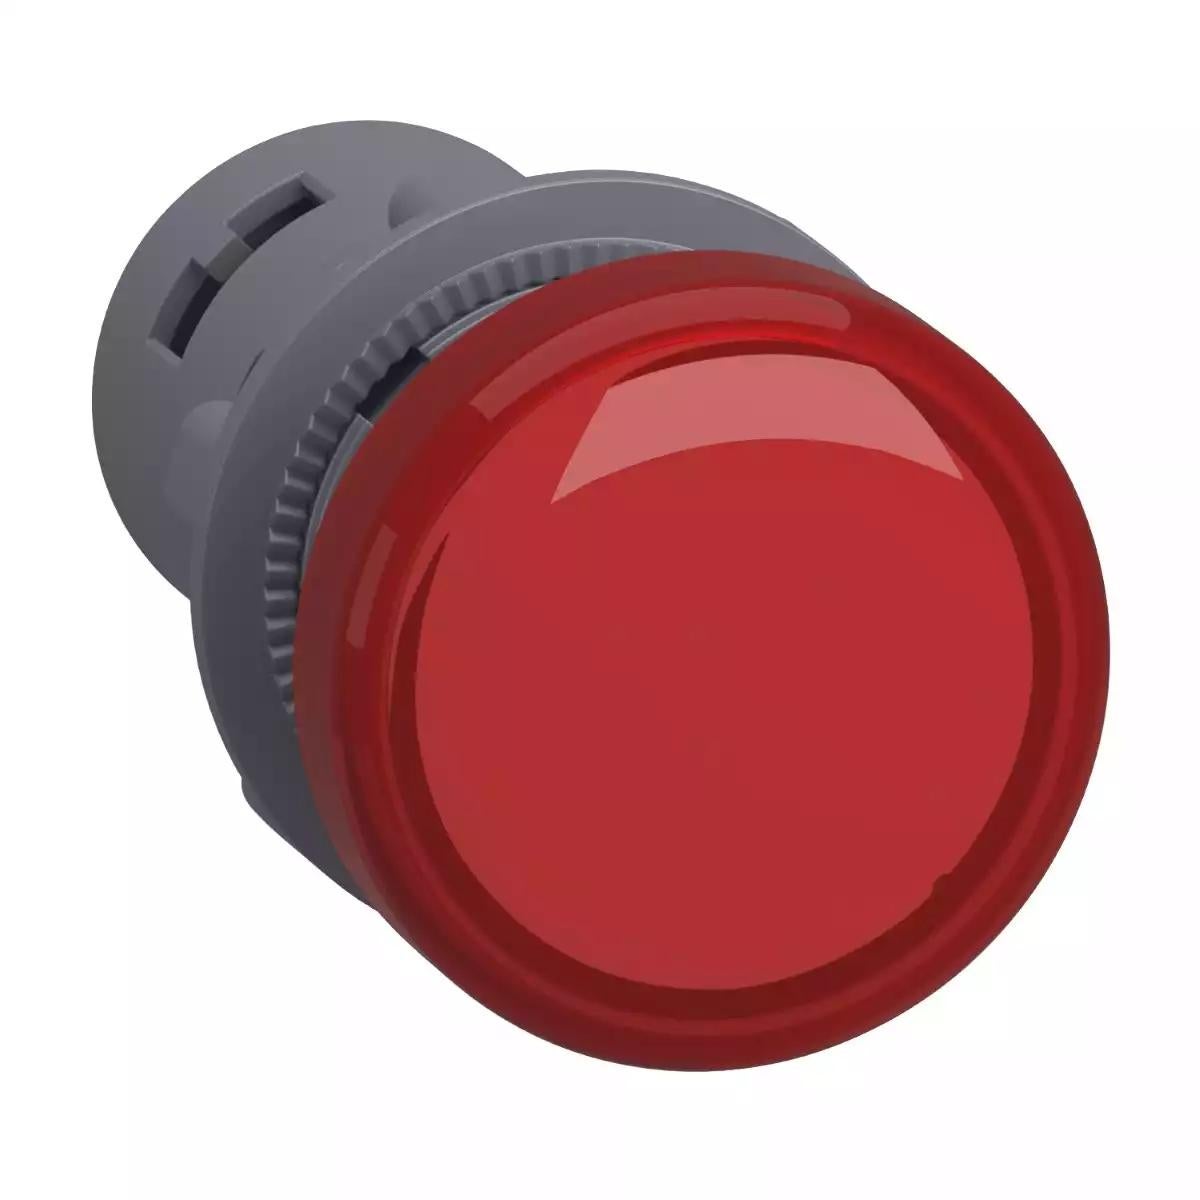 Schneider Electric round pilot light Ã˜ 22 - red - integral LED - 24 V AC/DC - screw clamp terminals